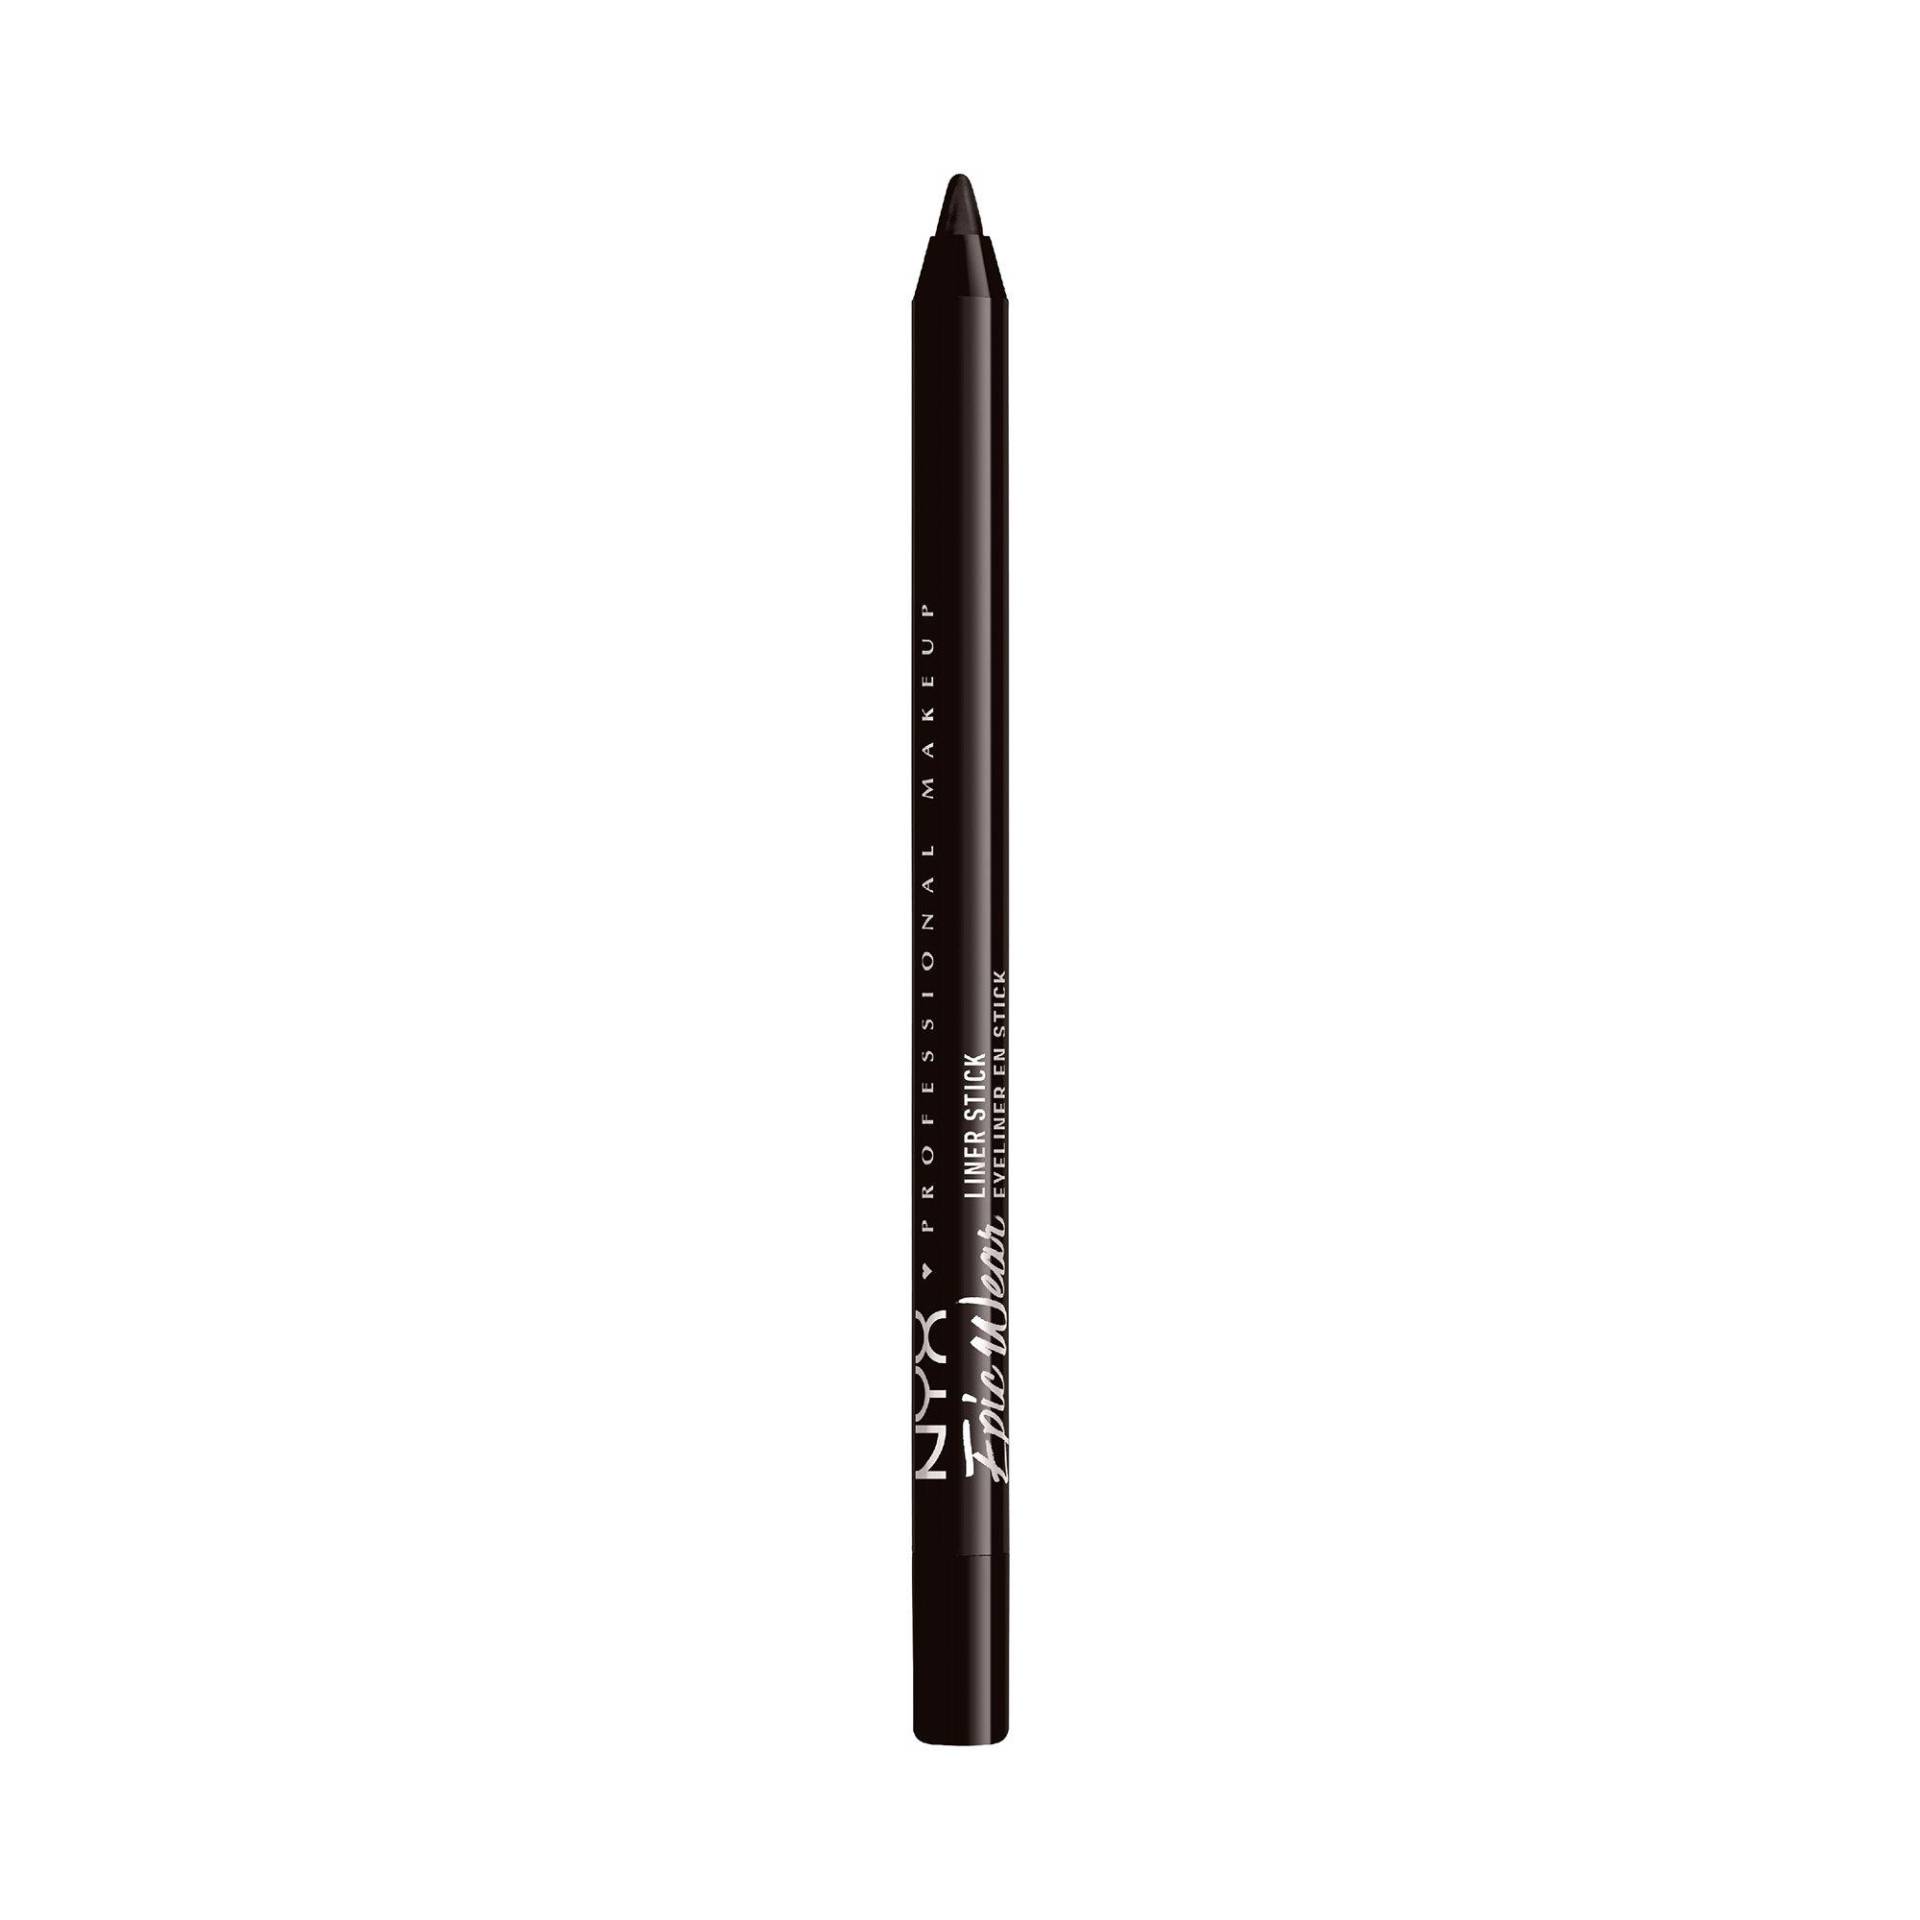 Epic Wear Liner Stick, Eyeliner Damen Sienna 1.2g von NYX-PROFESSIONAL-MAKEUP